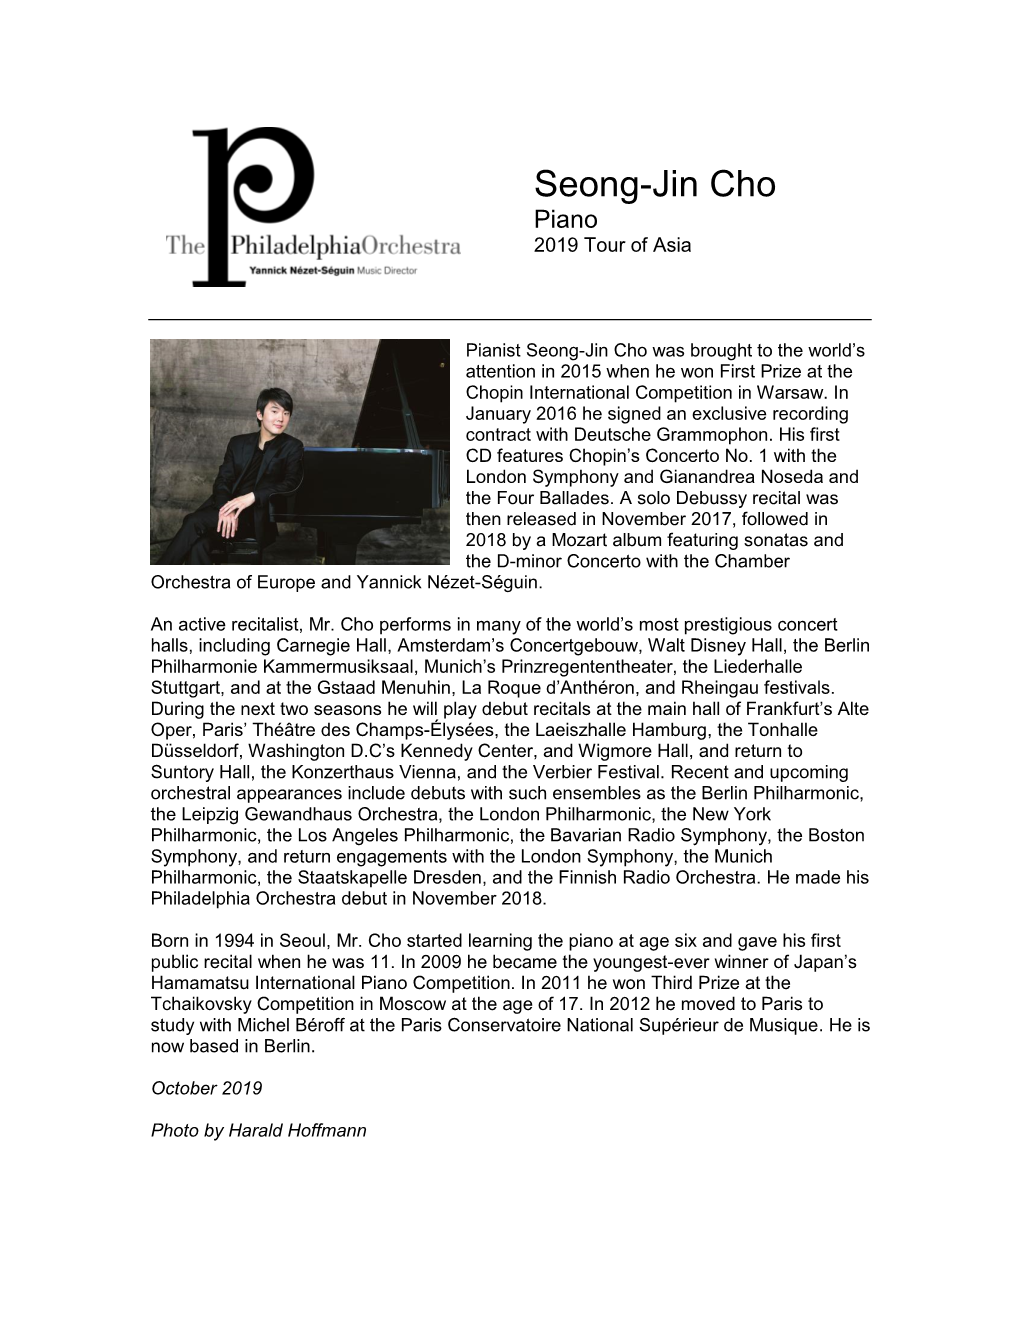 Seong-Jin Cho Piano 2019 Tour of Asia